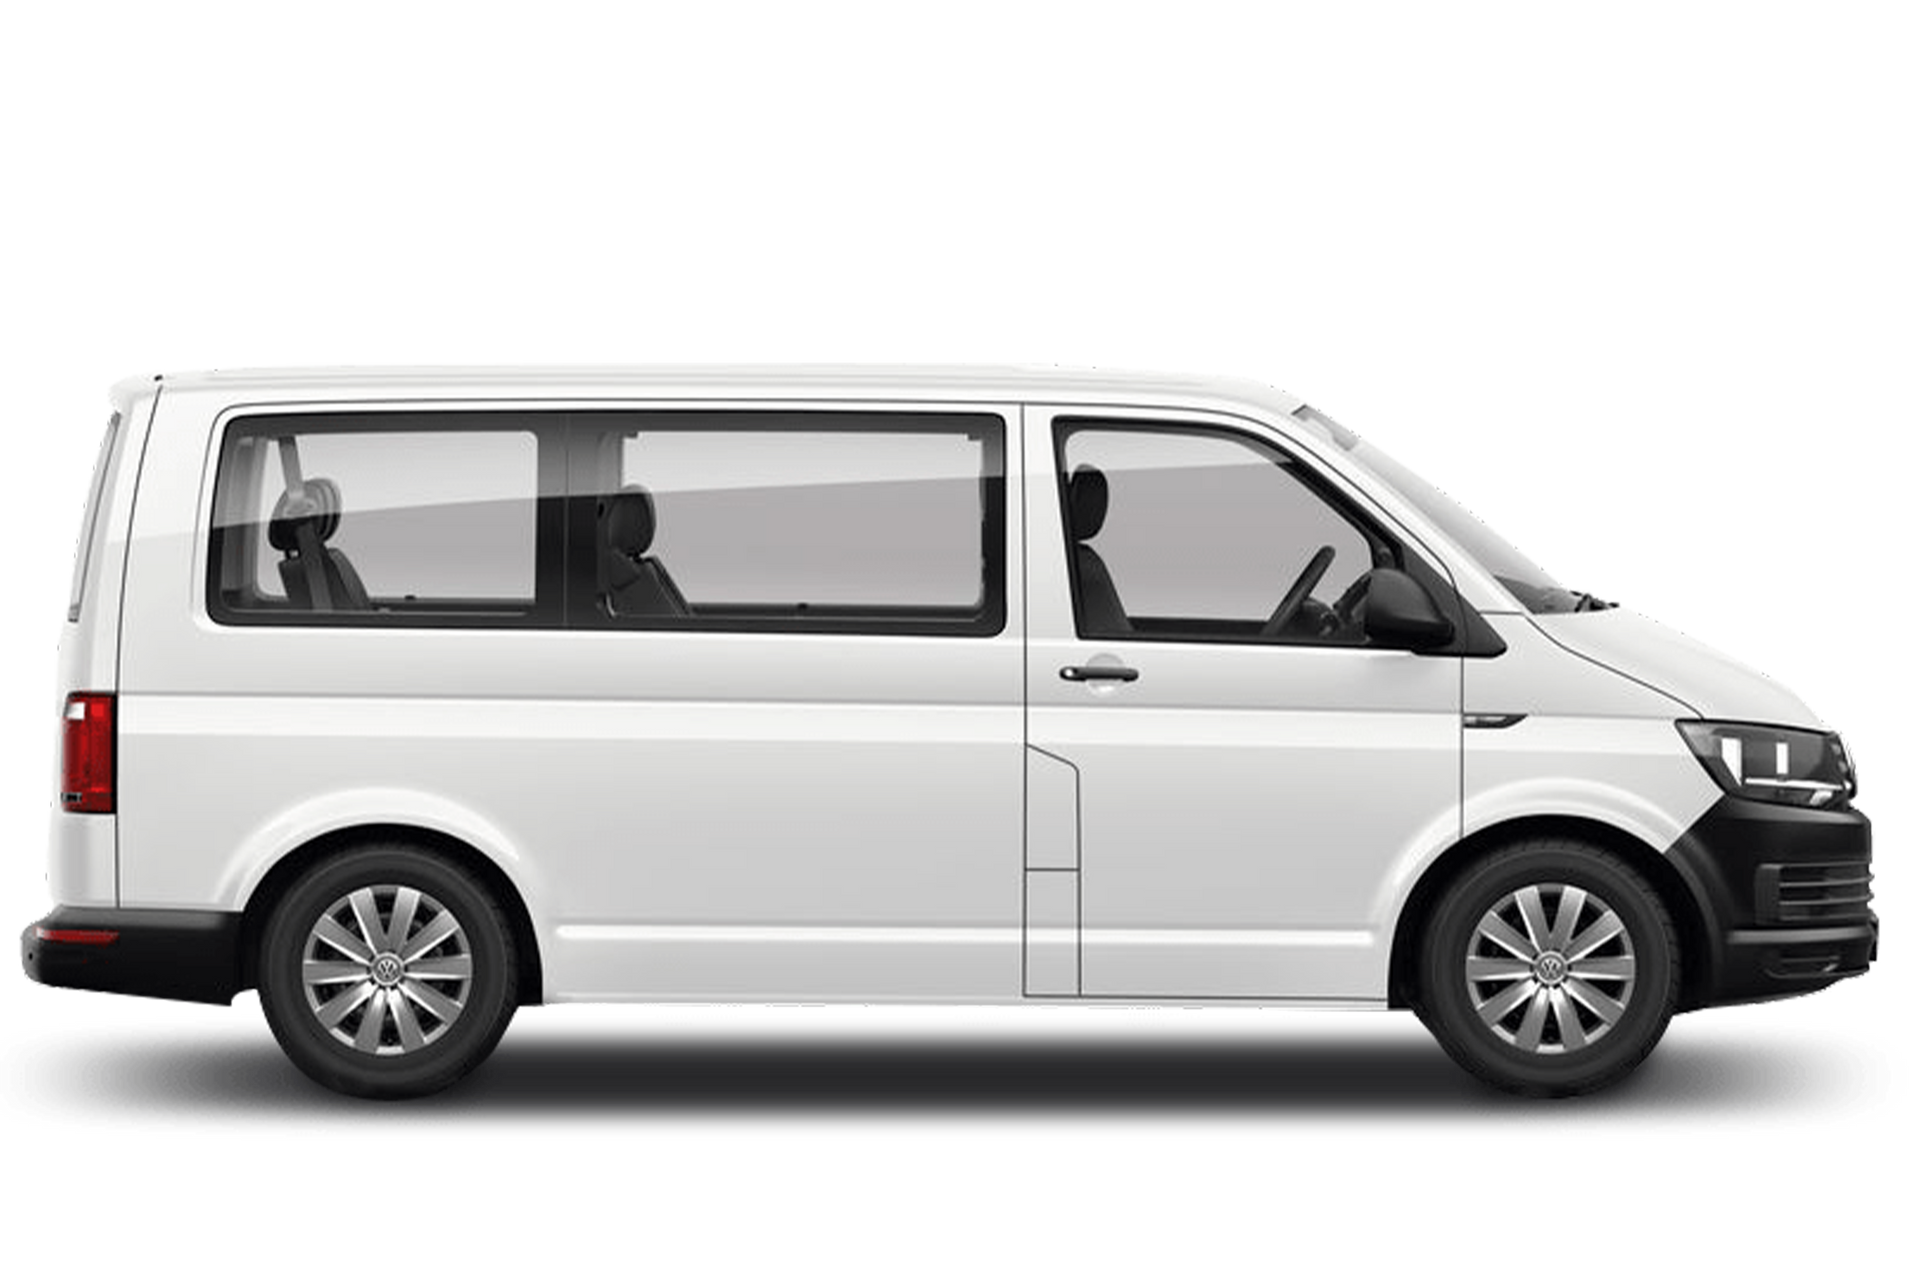 A white minivan 9 seater rental car